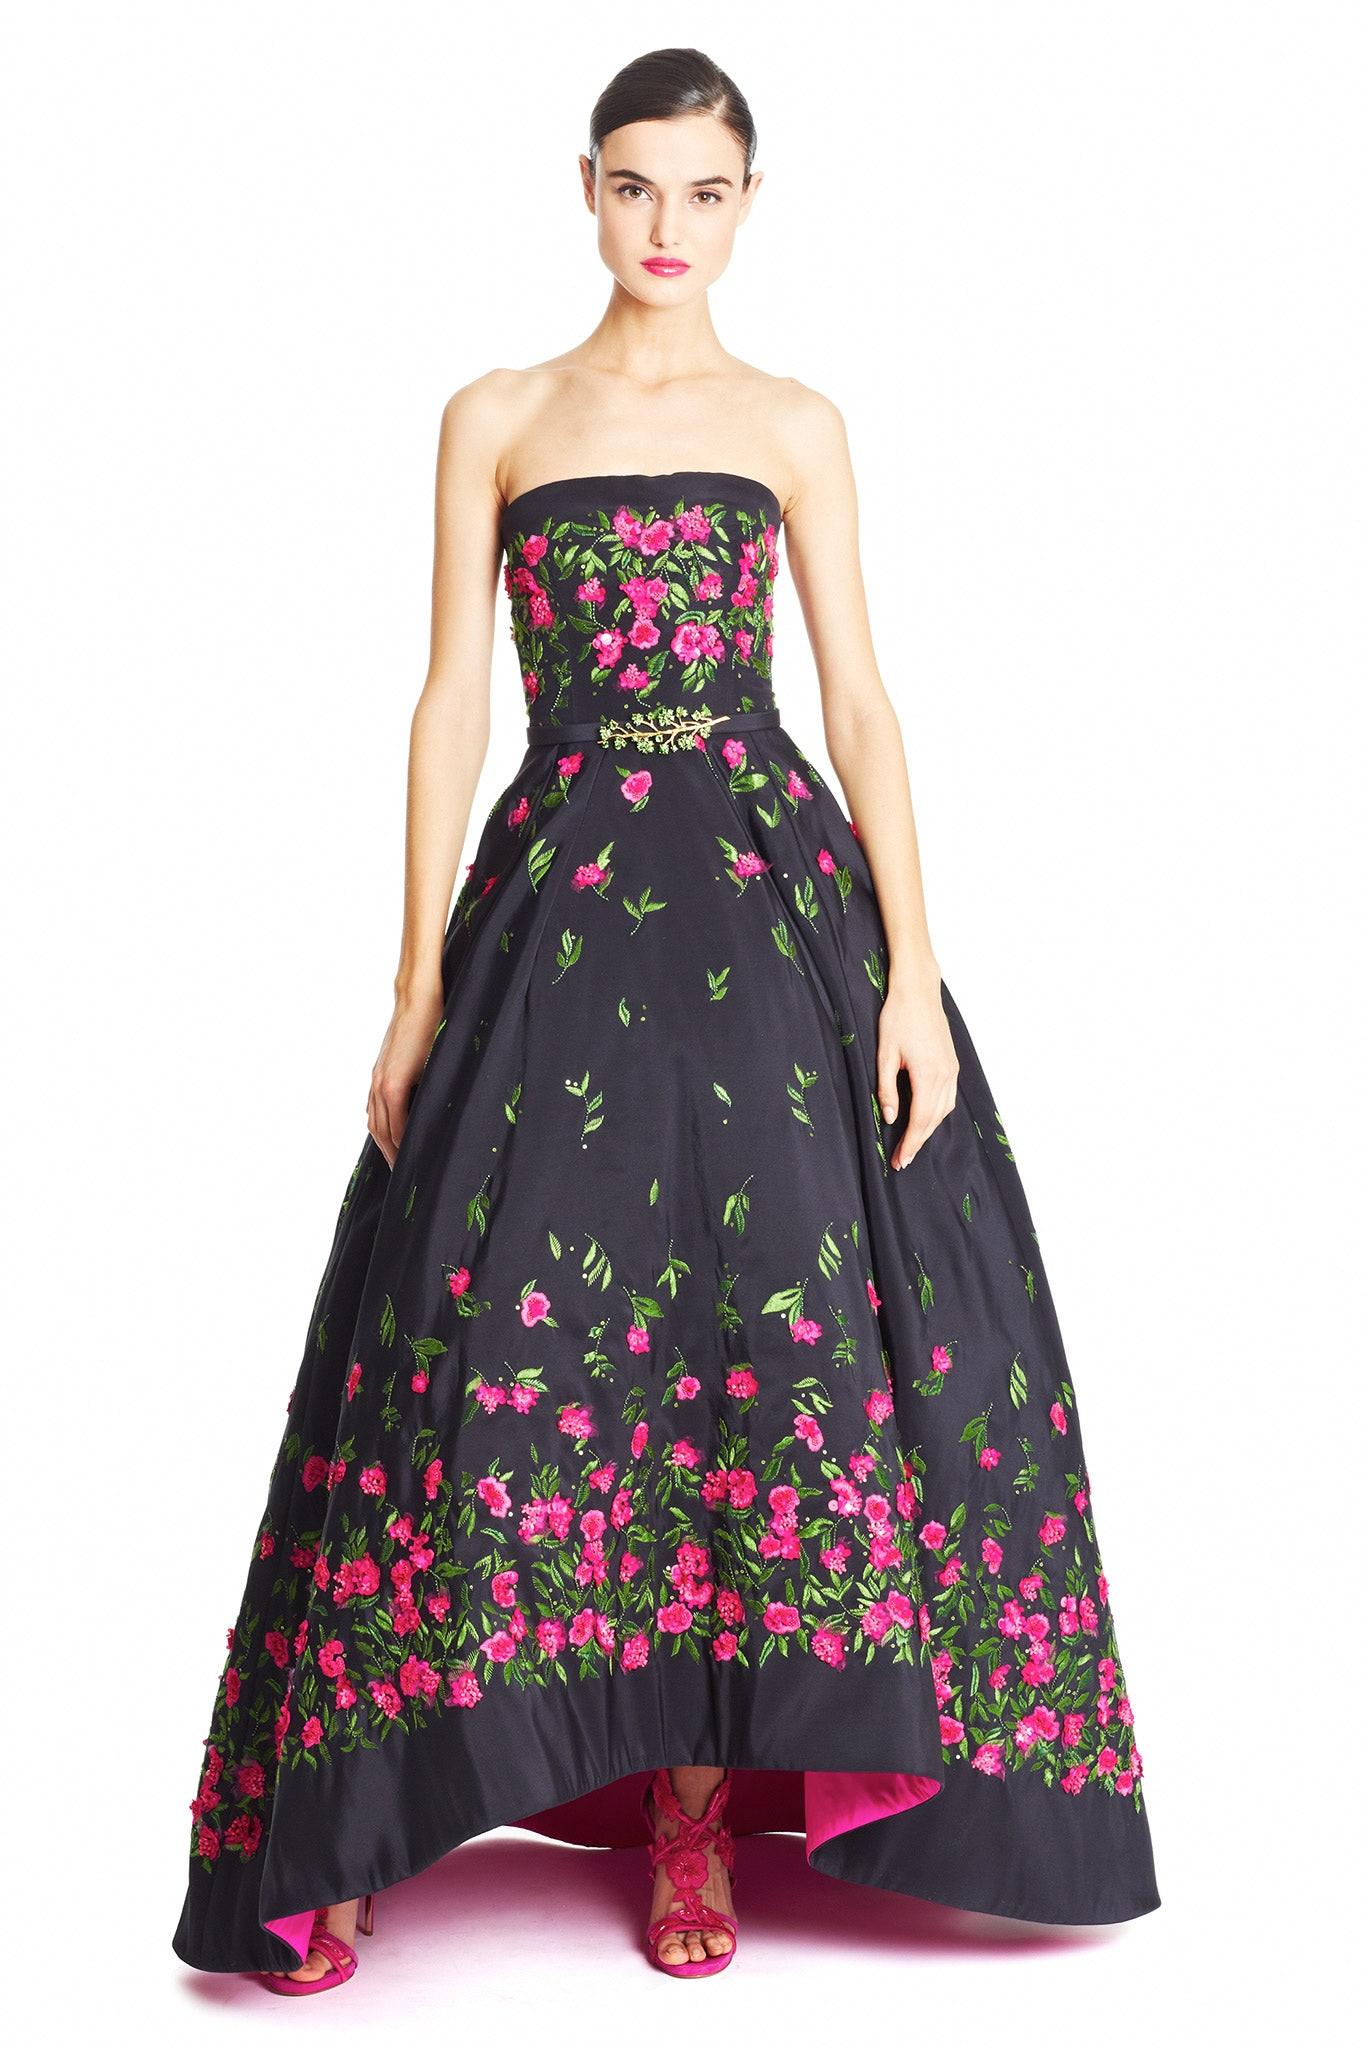 Women's 2015 Oscar de la Renta Black Ball Gown with Pink Beaded Flowers 